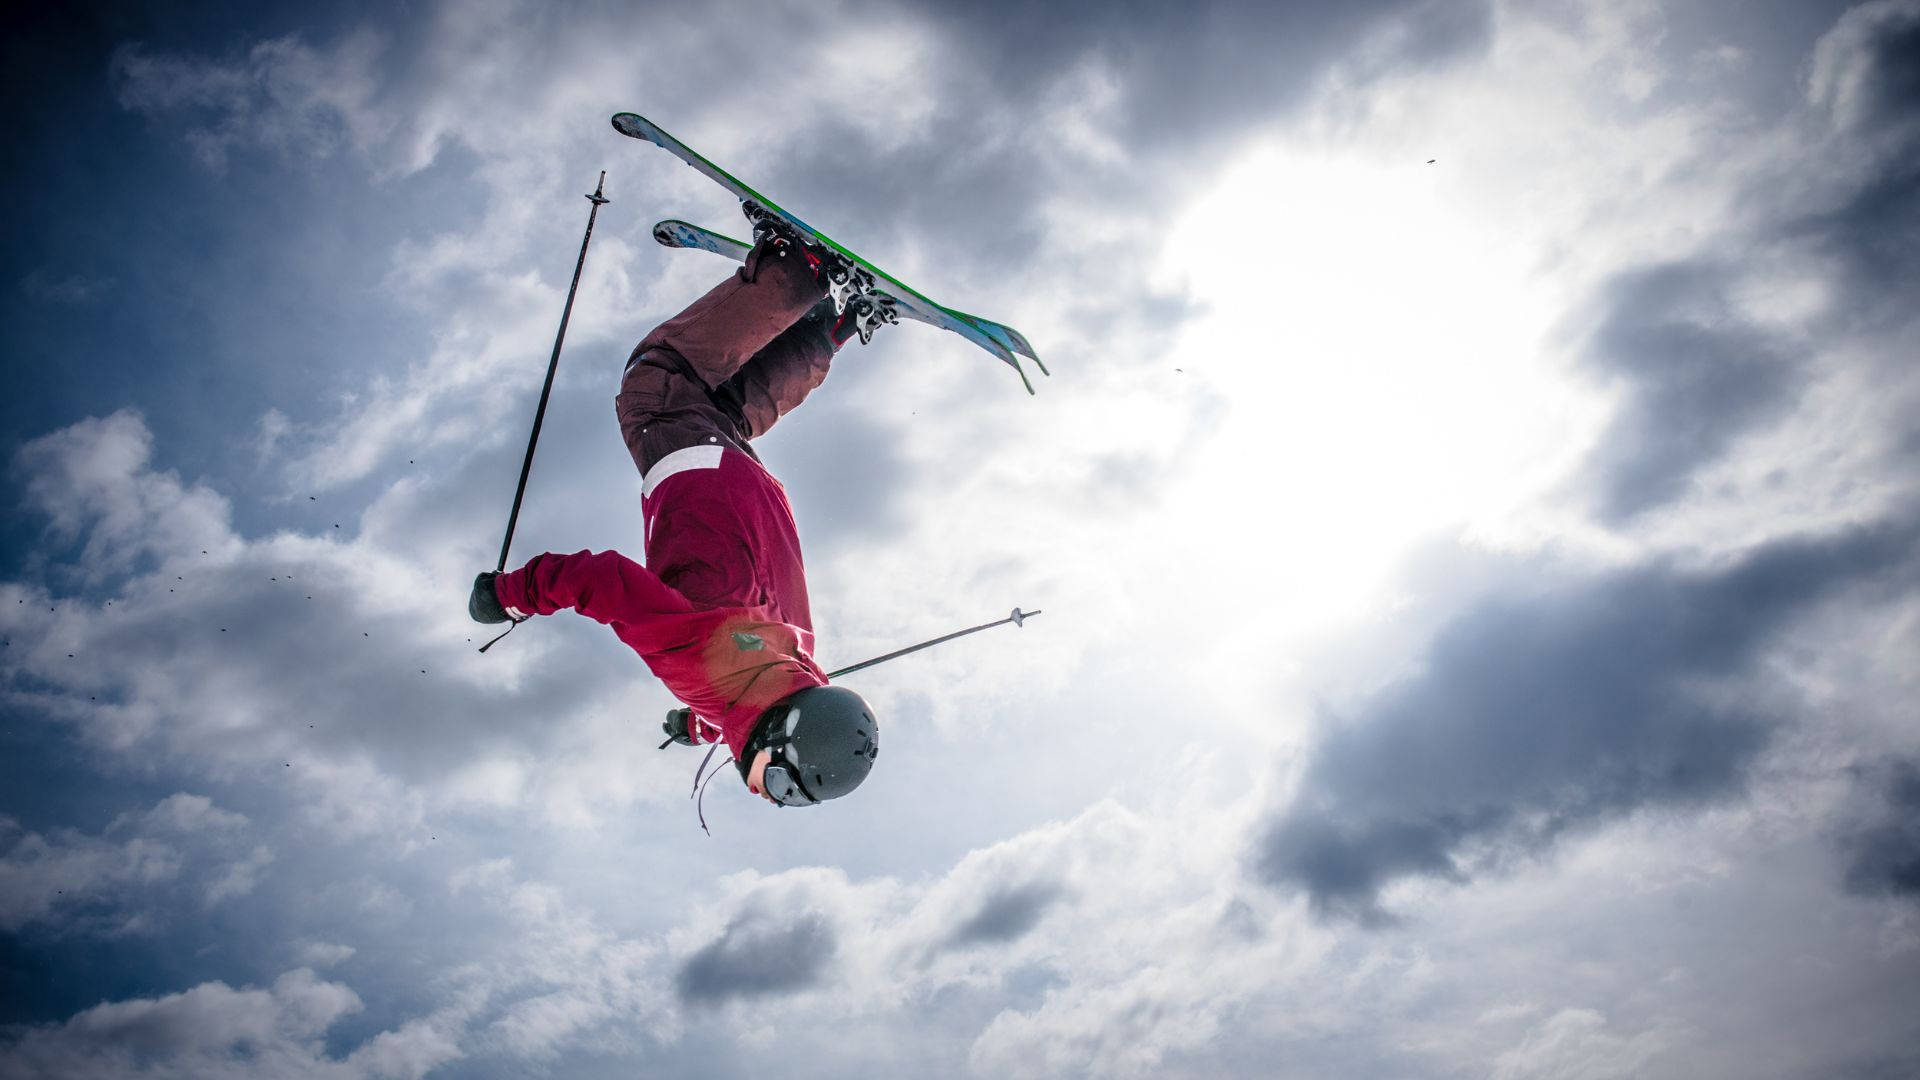 Daredevil Ski Jumper Performing A High-flying Backflip Background